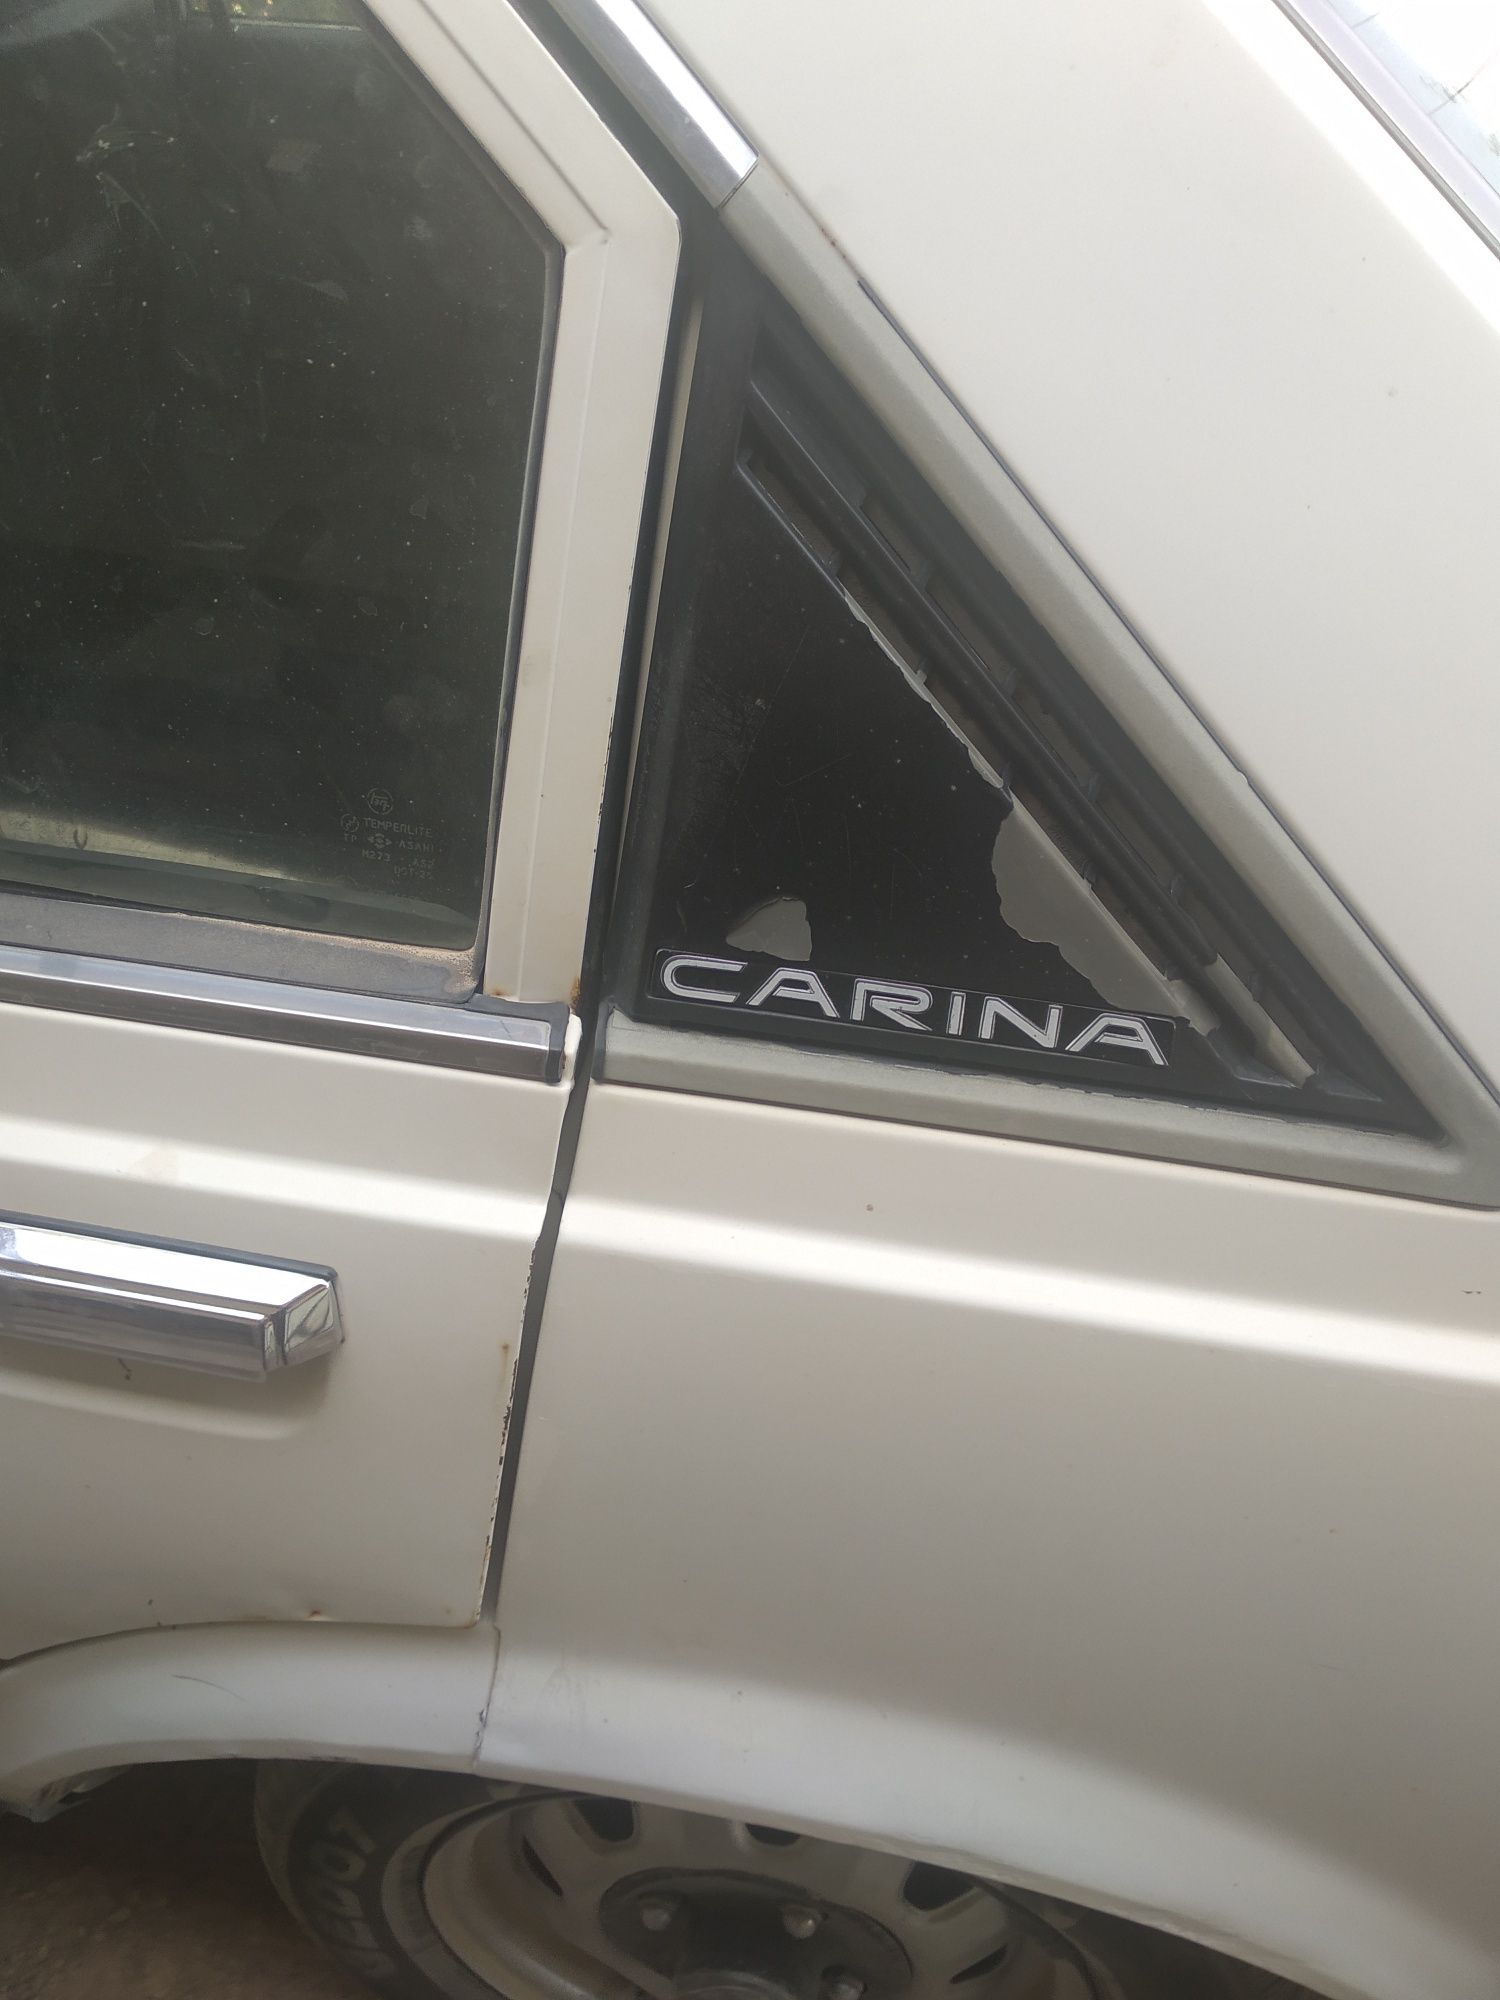 Продаю автомобиль TOYOTA CARINA   1984г выпуска.